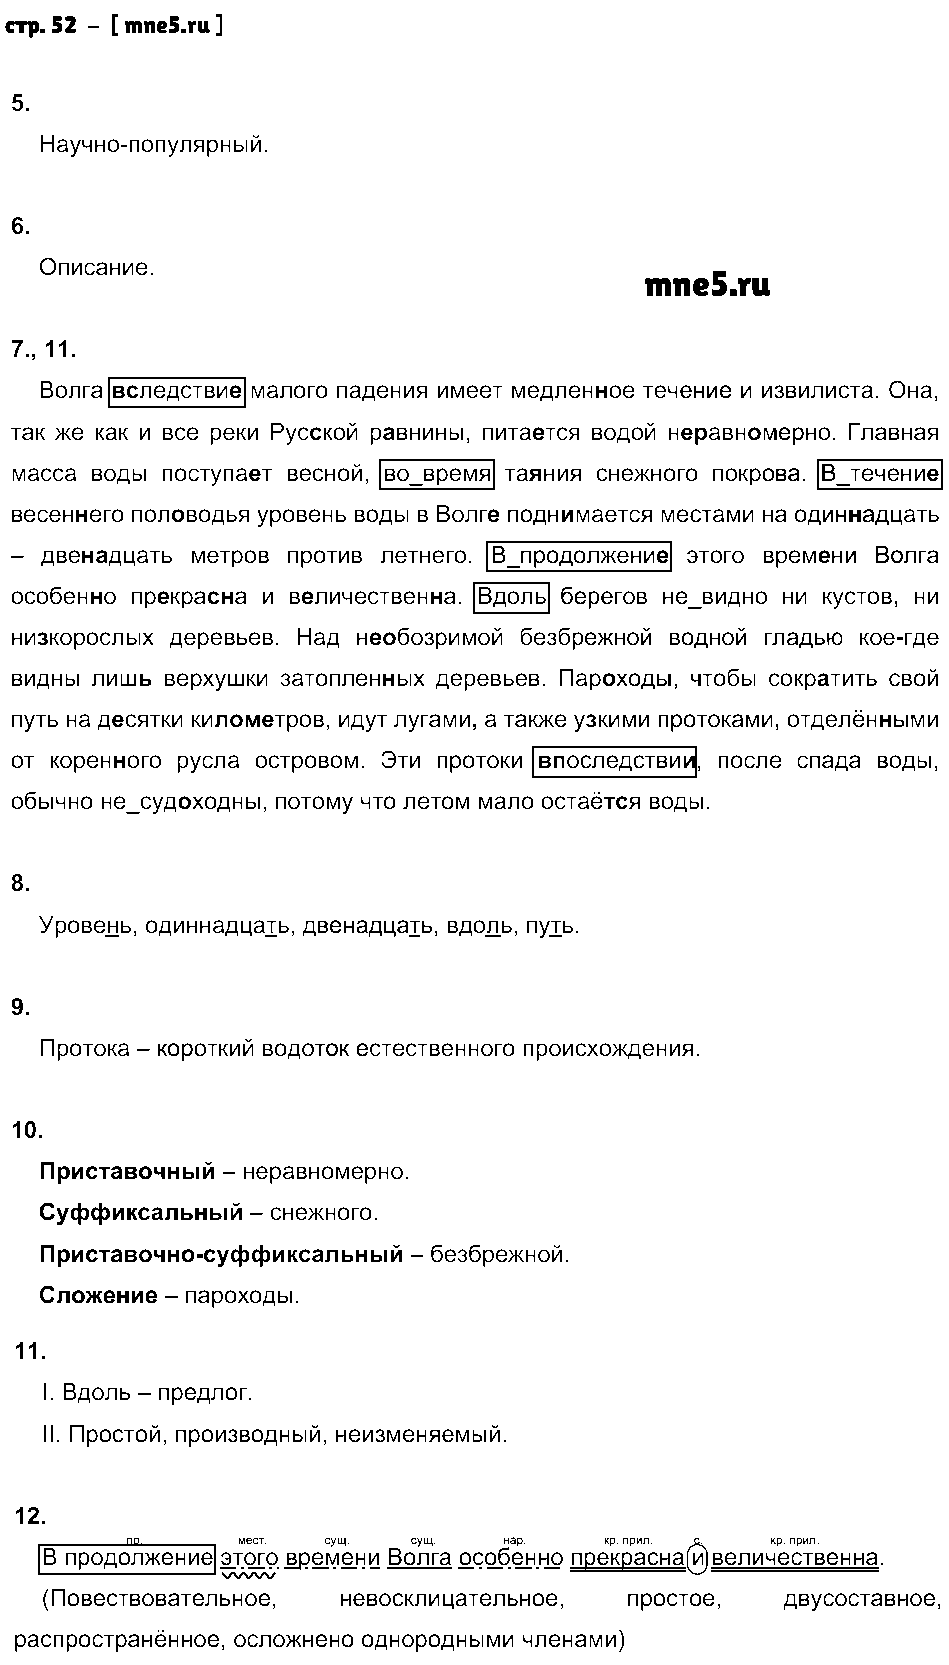 ГДЗ Русский язык 7 класс - стр. 52